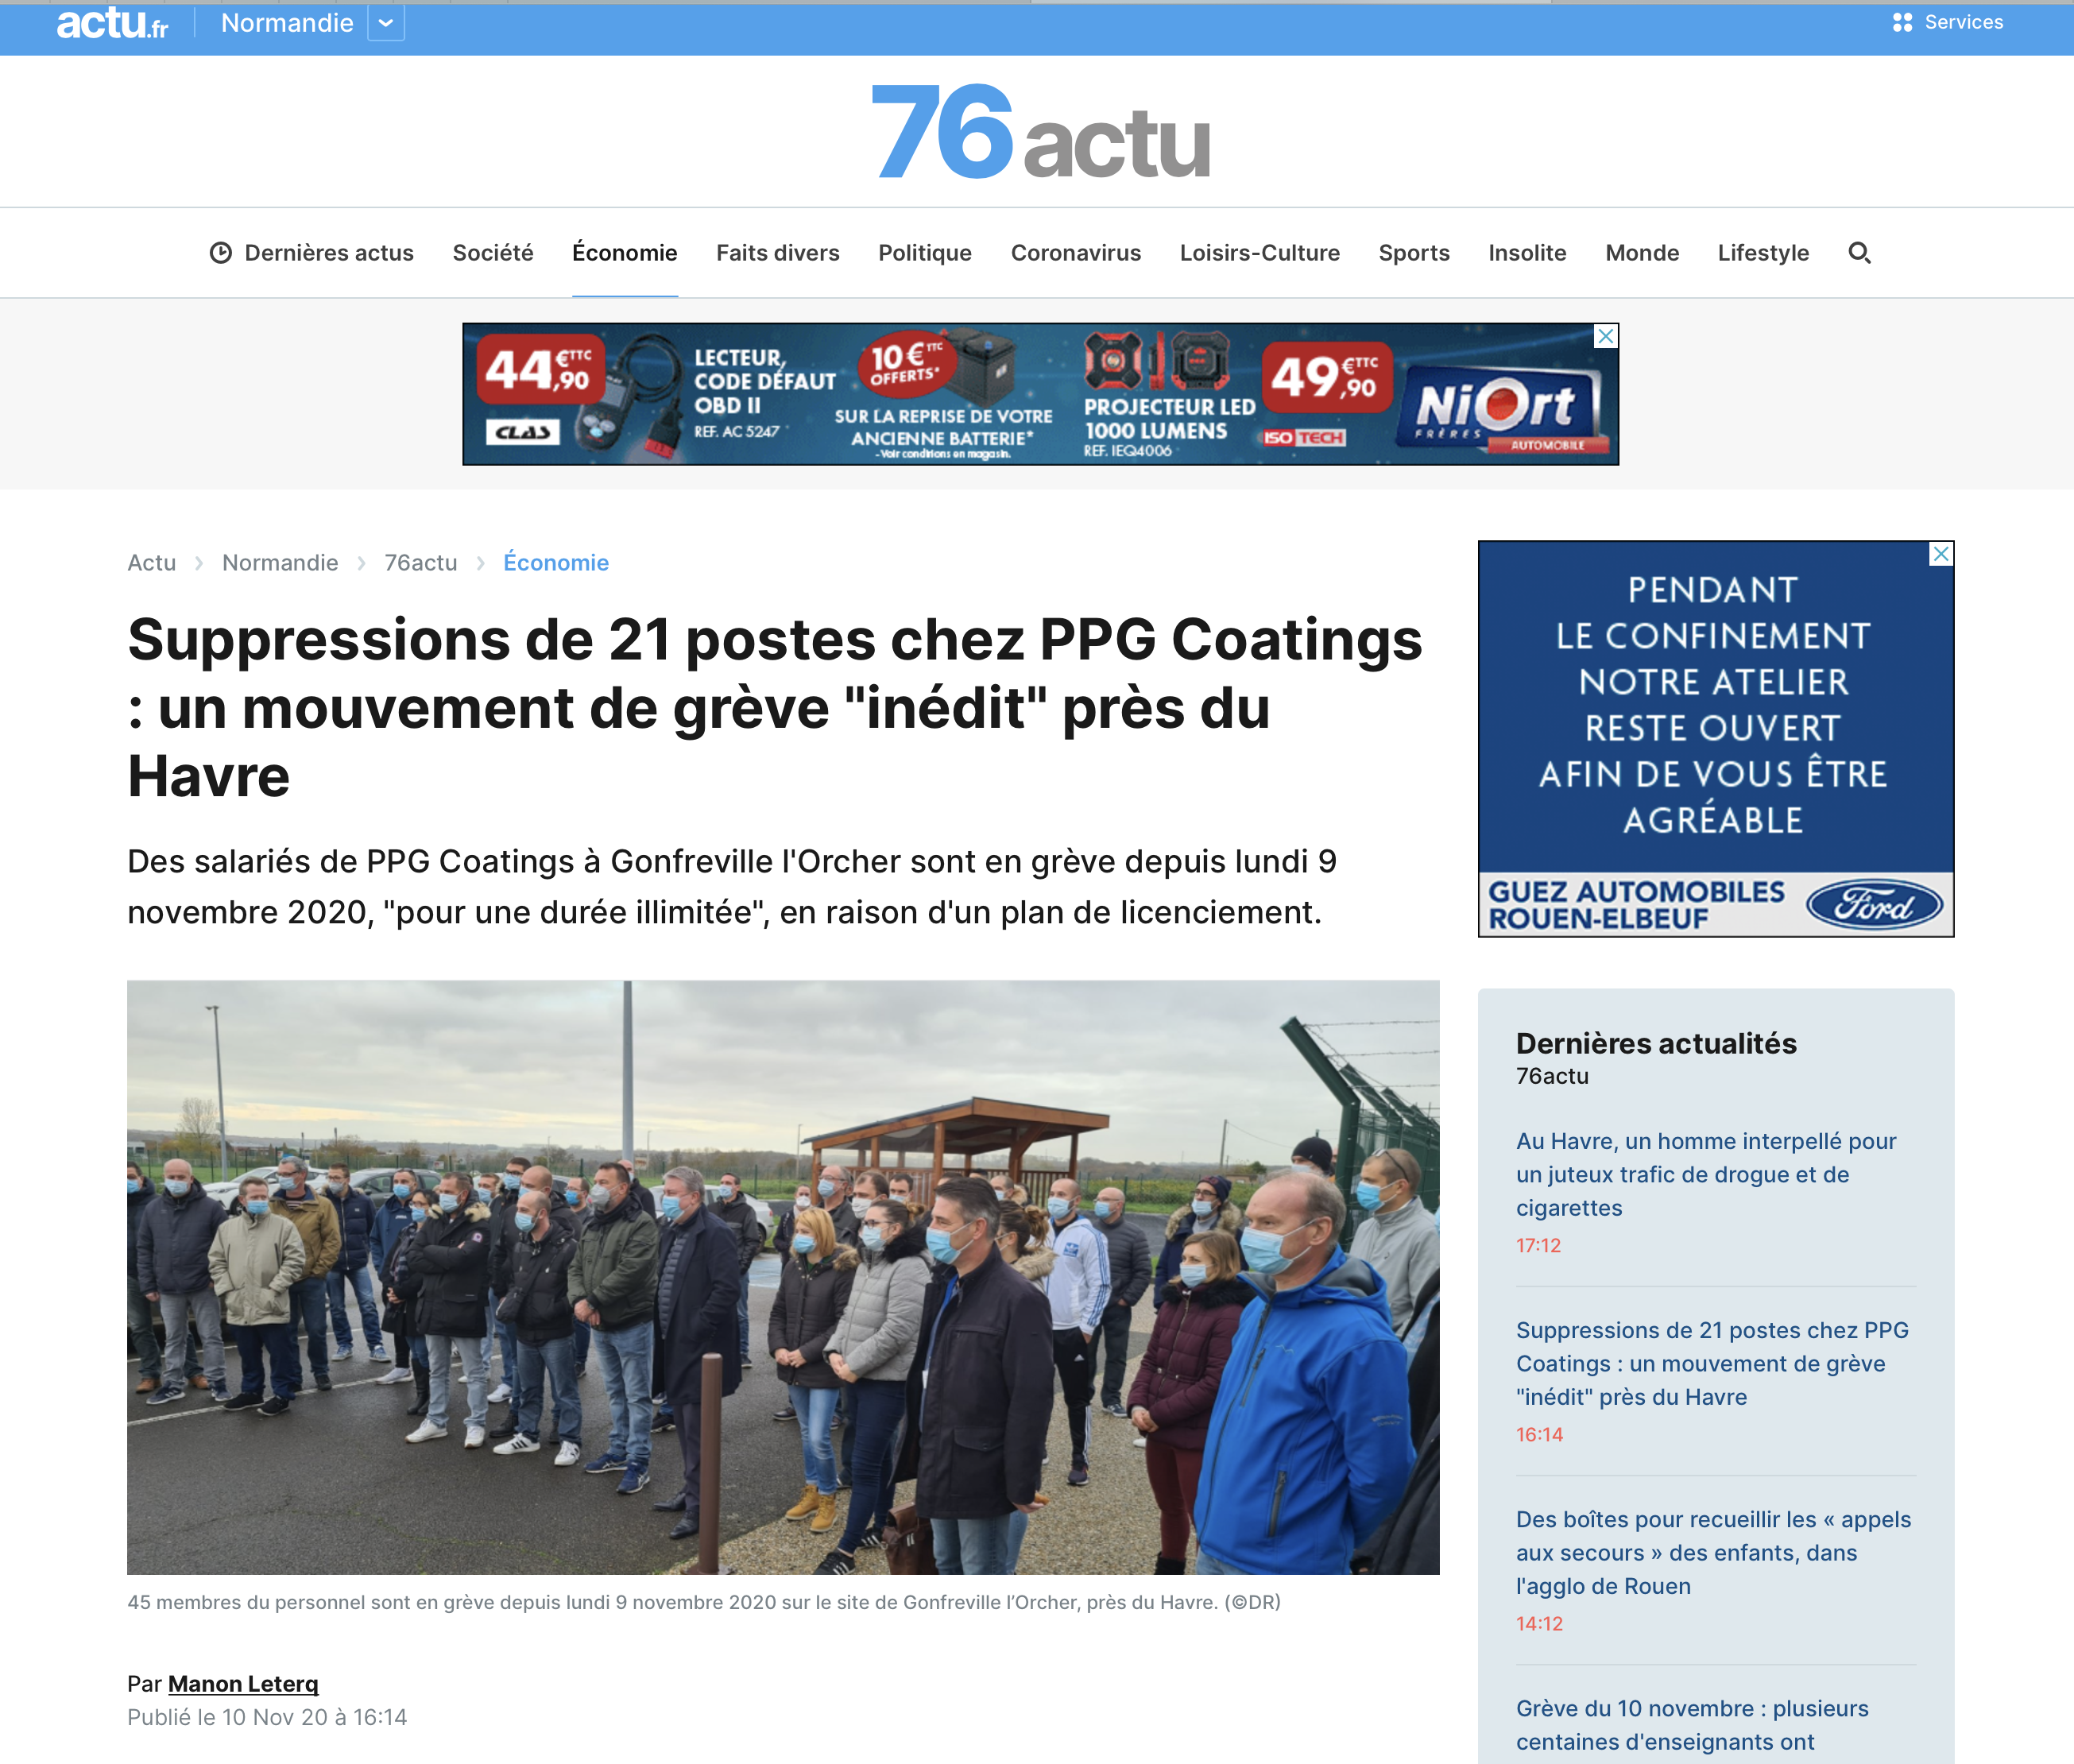 Suppressions de 21 postes chez PPG Coatings : un mouvement de grève "inédit" près du Havre | 76actu {HTML}